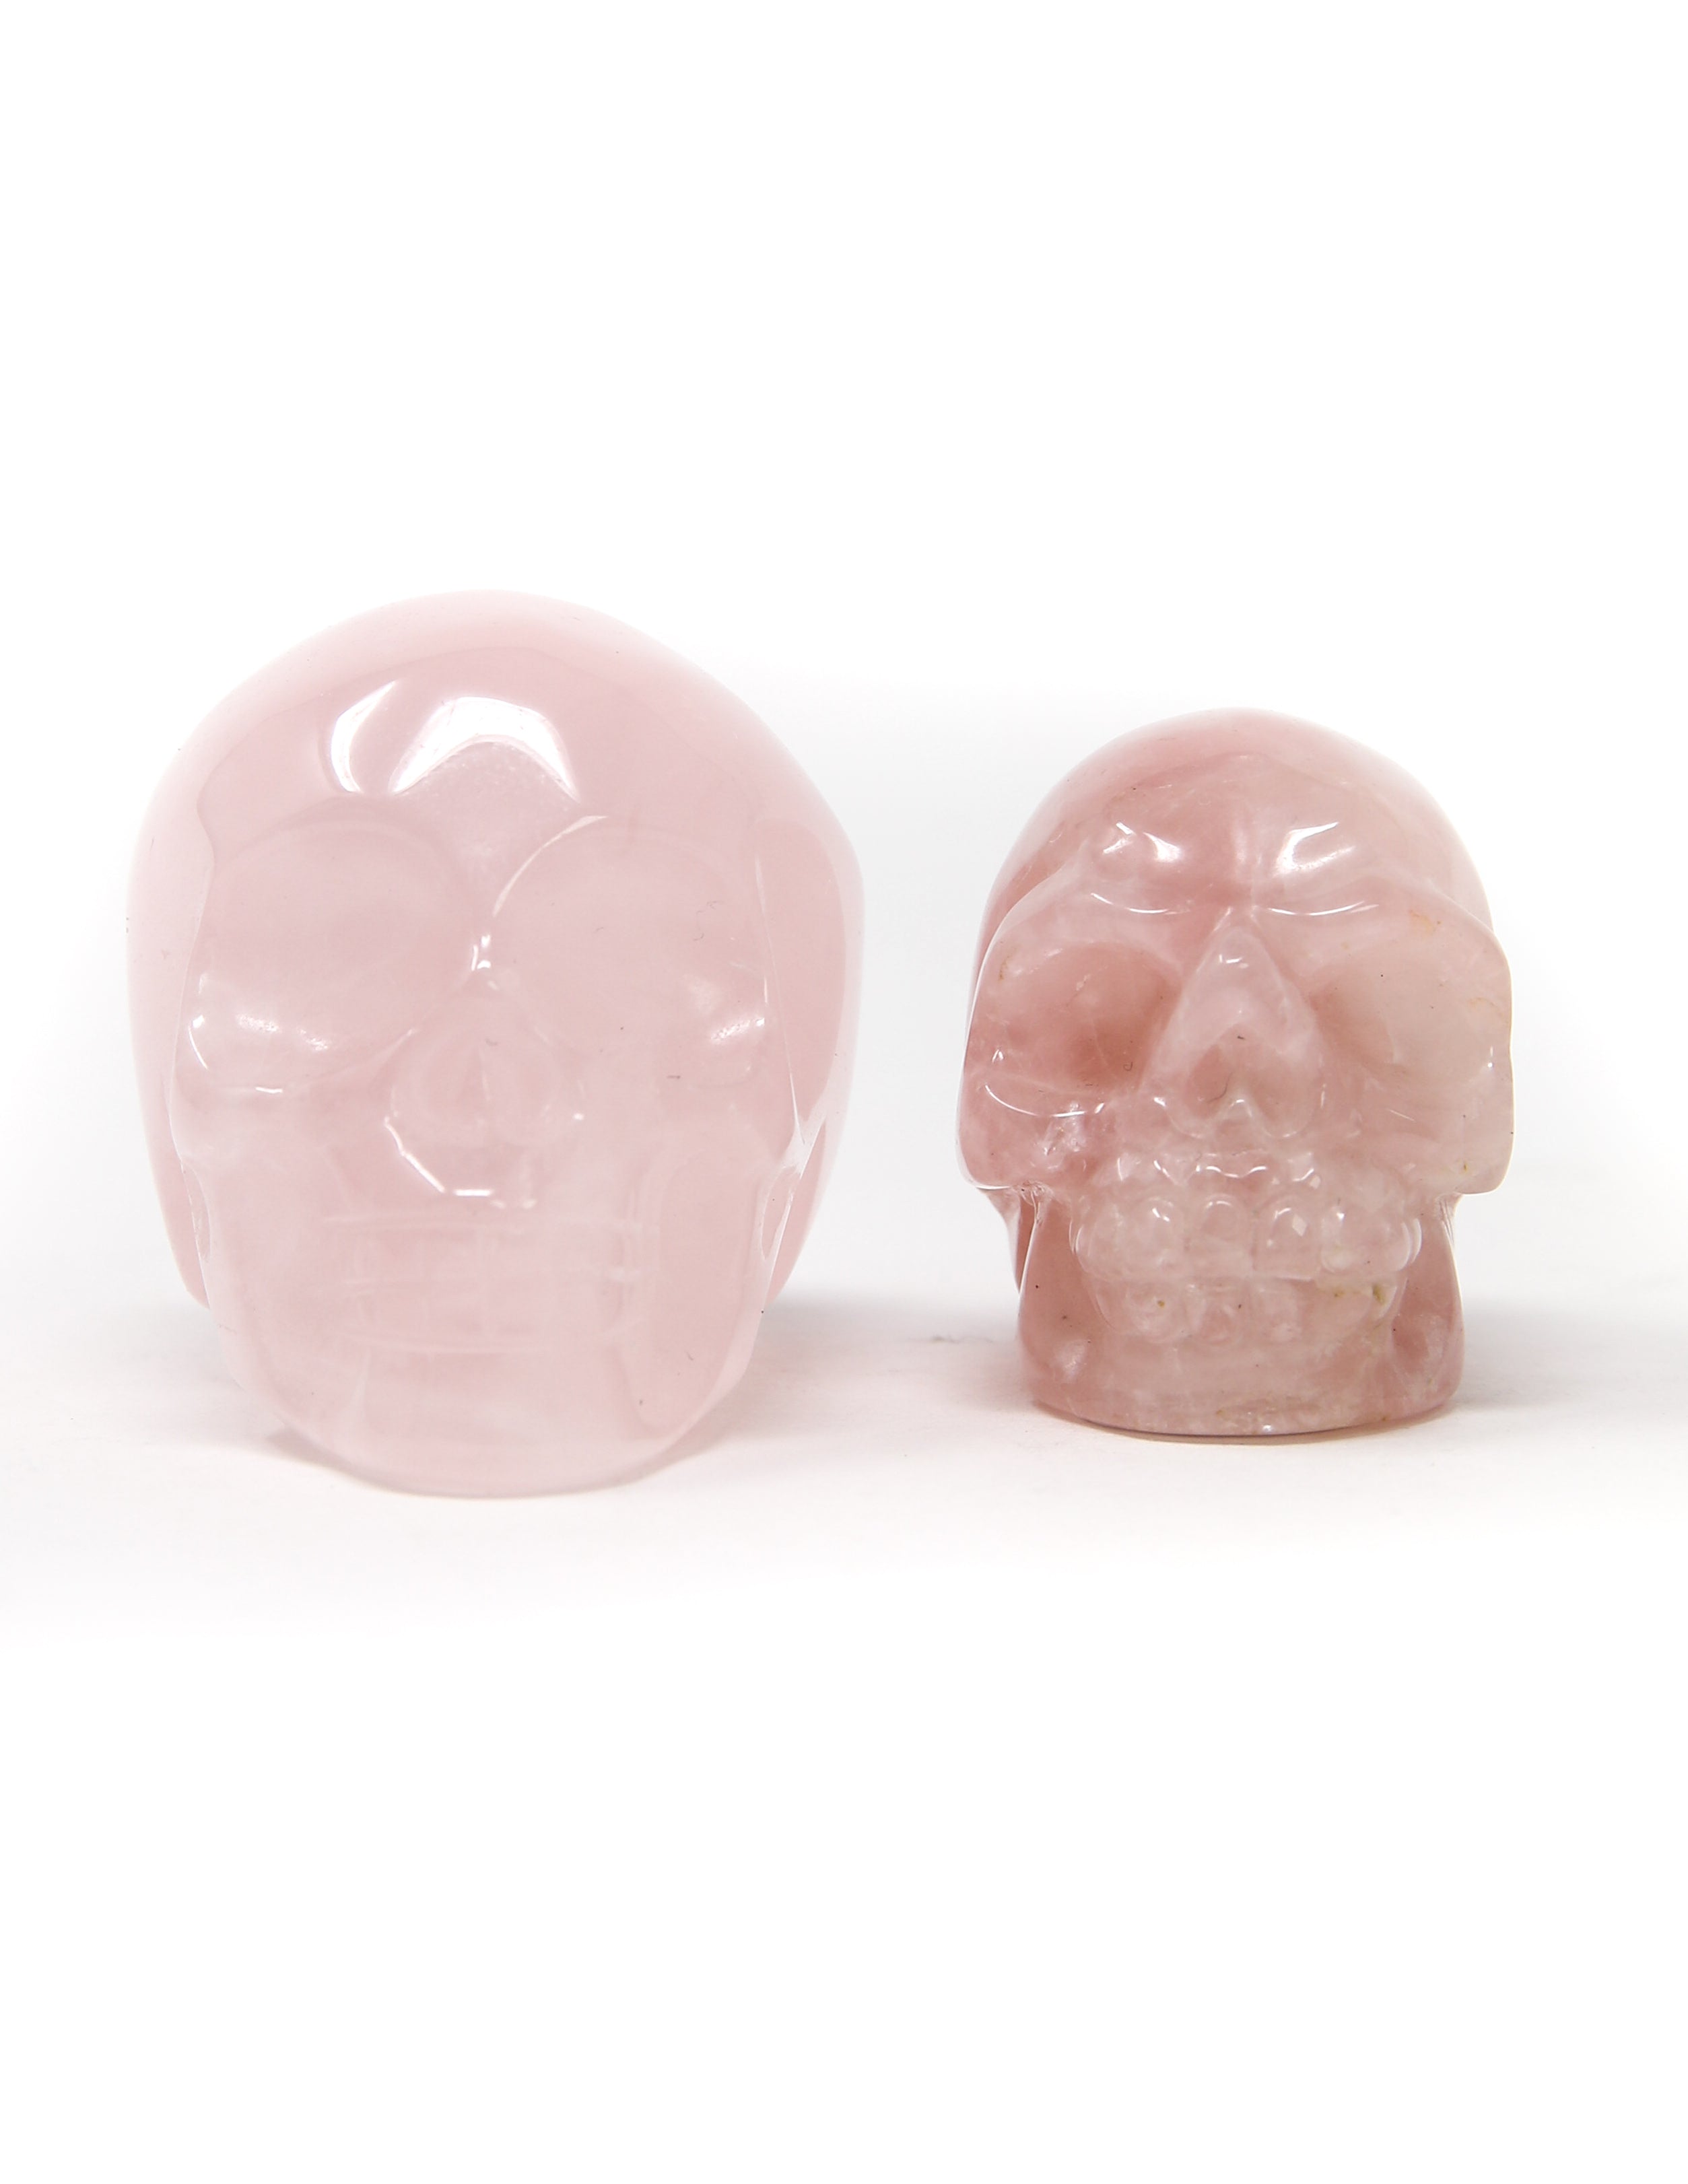 Rose Quartz Skull Medium